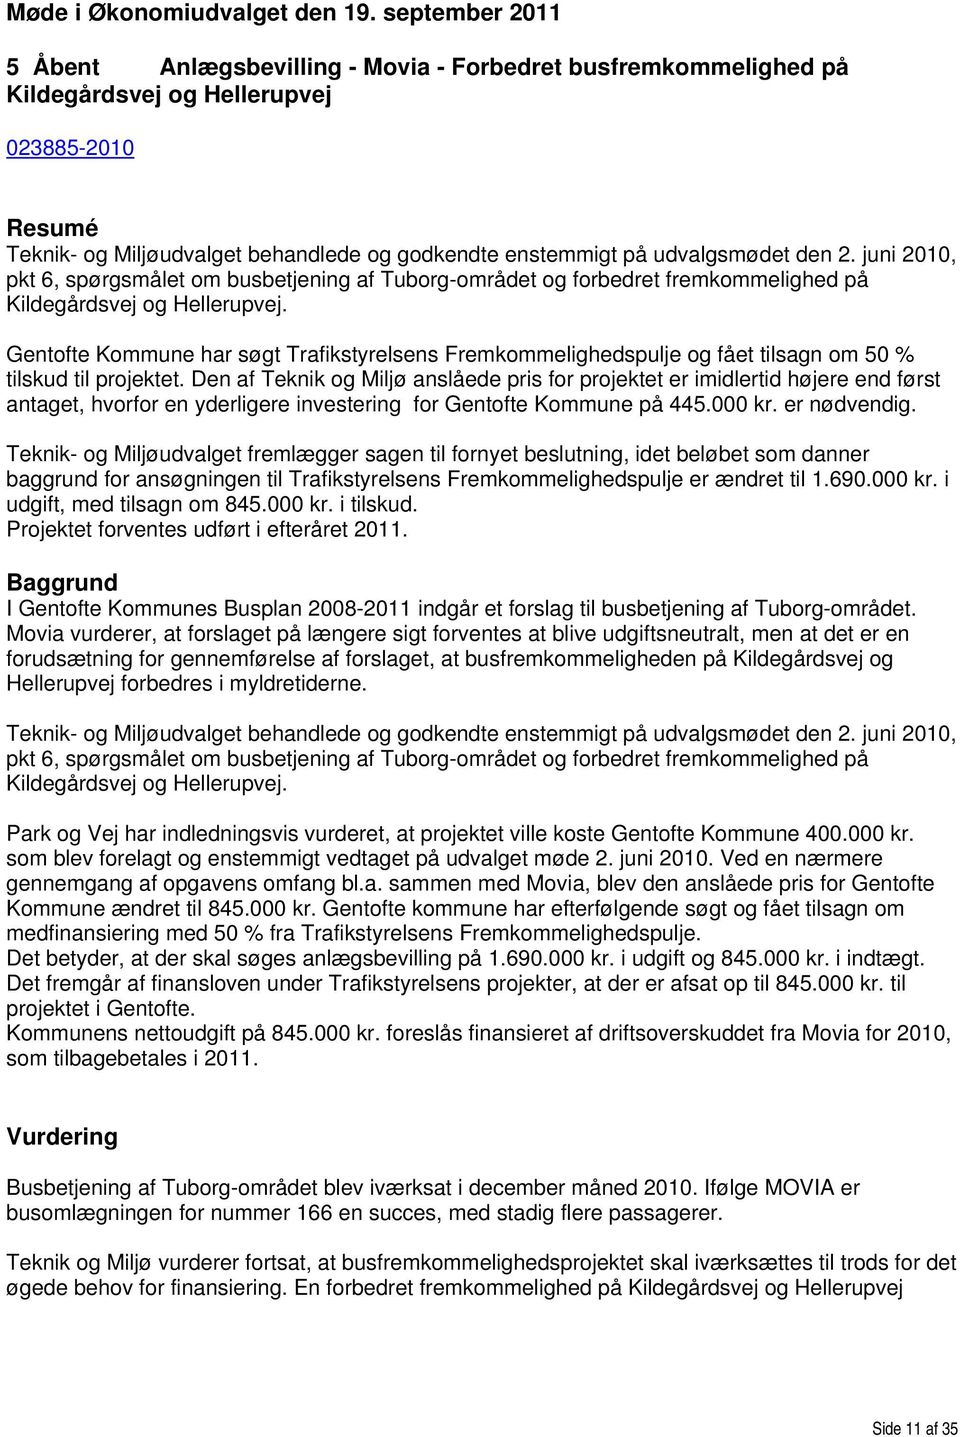 udvalgsmødet den 2. juni 2010, pkt 6, spørgsmålet om busbetjening af Tuborg-området og forbedret fremkommelighed på Kildegårdsvej og Hellerupvej.